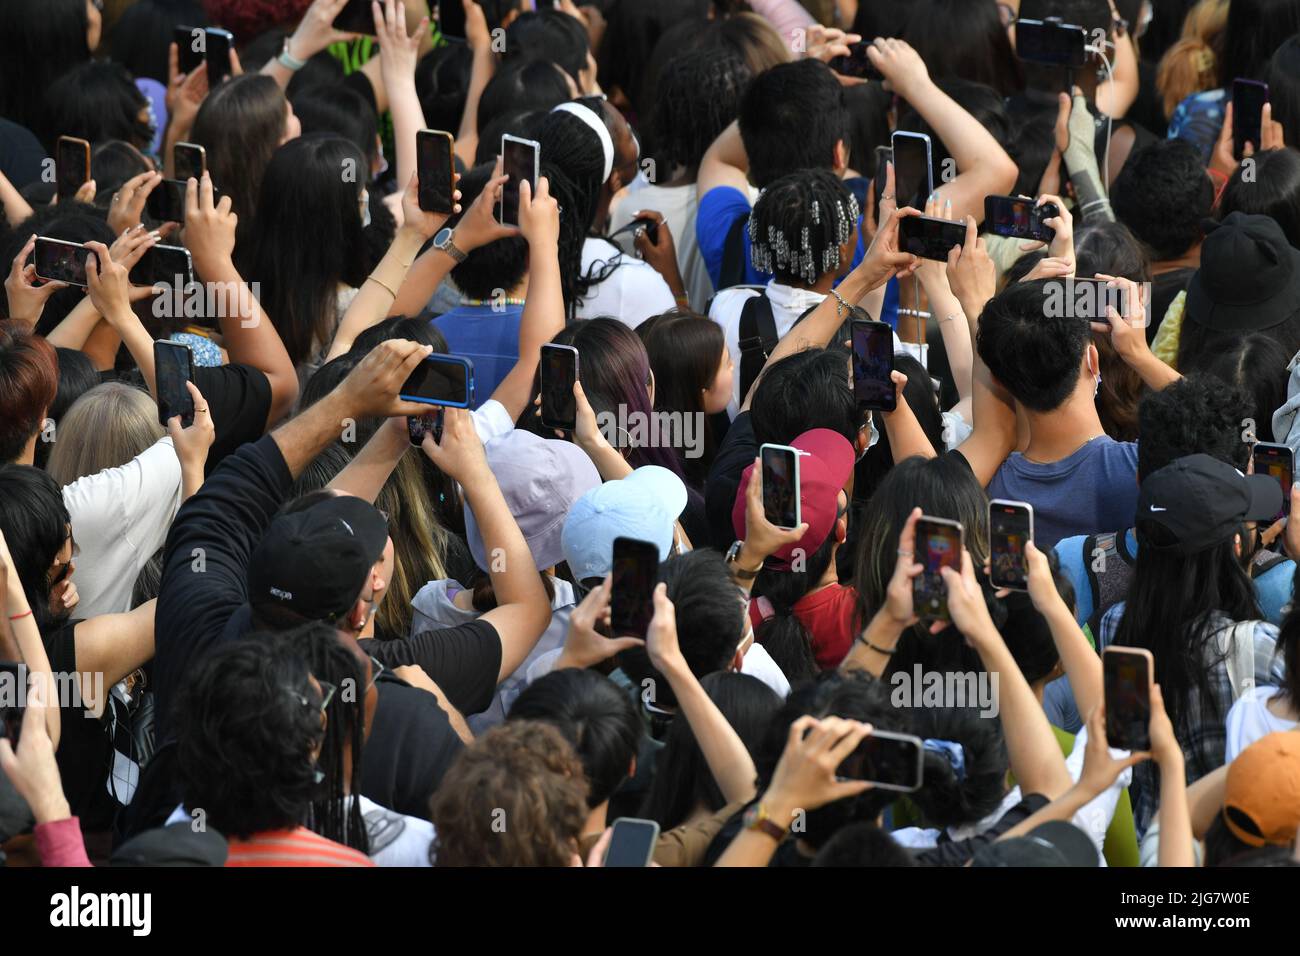 La gente usa i loro telefoni delle cellule per registrare il gruppo della ragazza del K-Pop aespa mentre si esibiscono sul palco durante la serie estiva del concerto di "Good Morning America" in Foto Stock